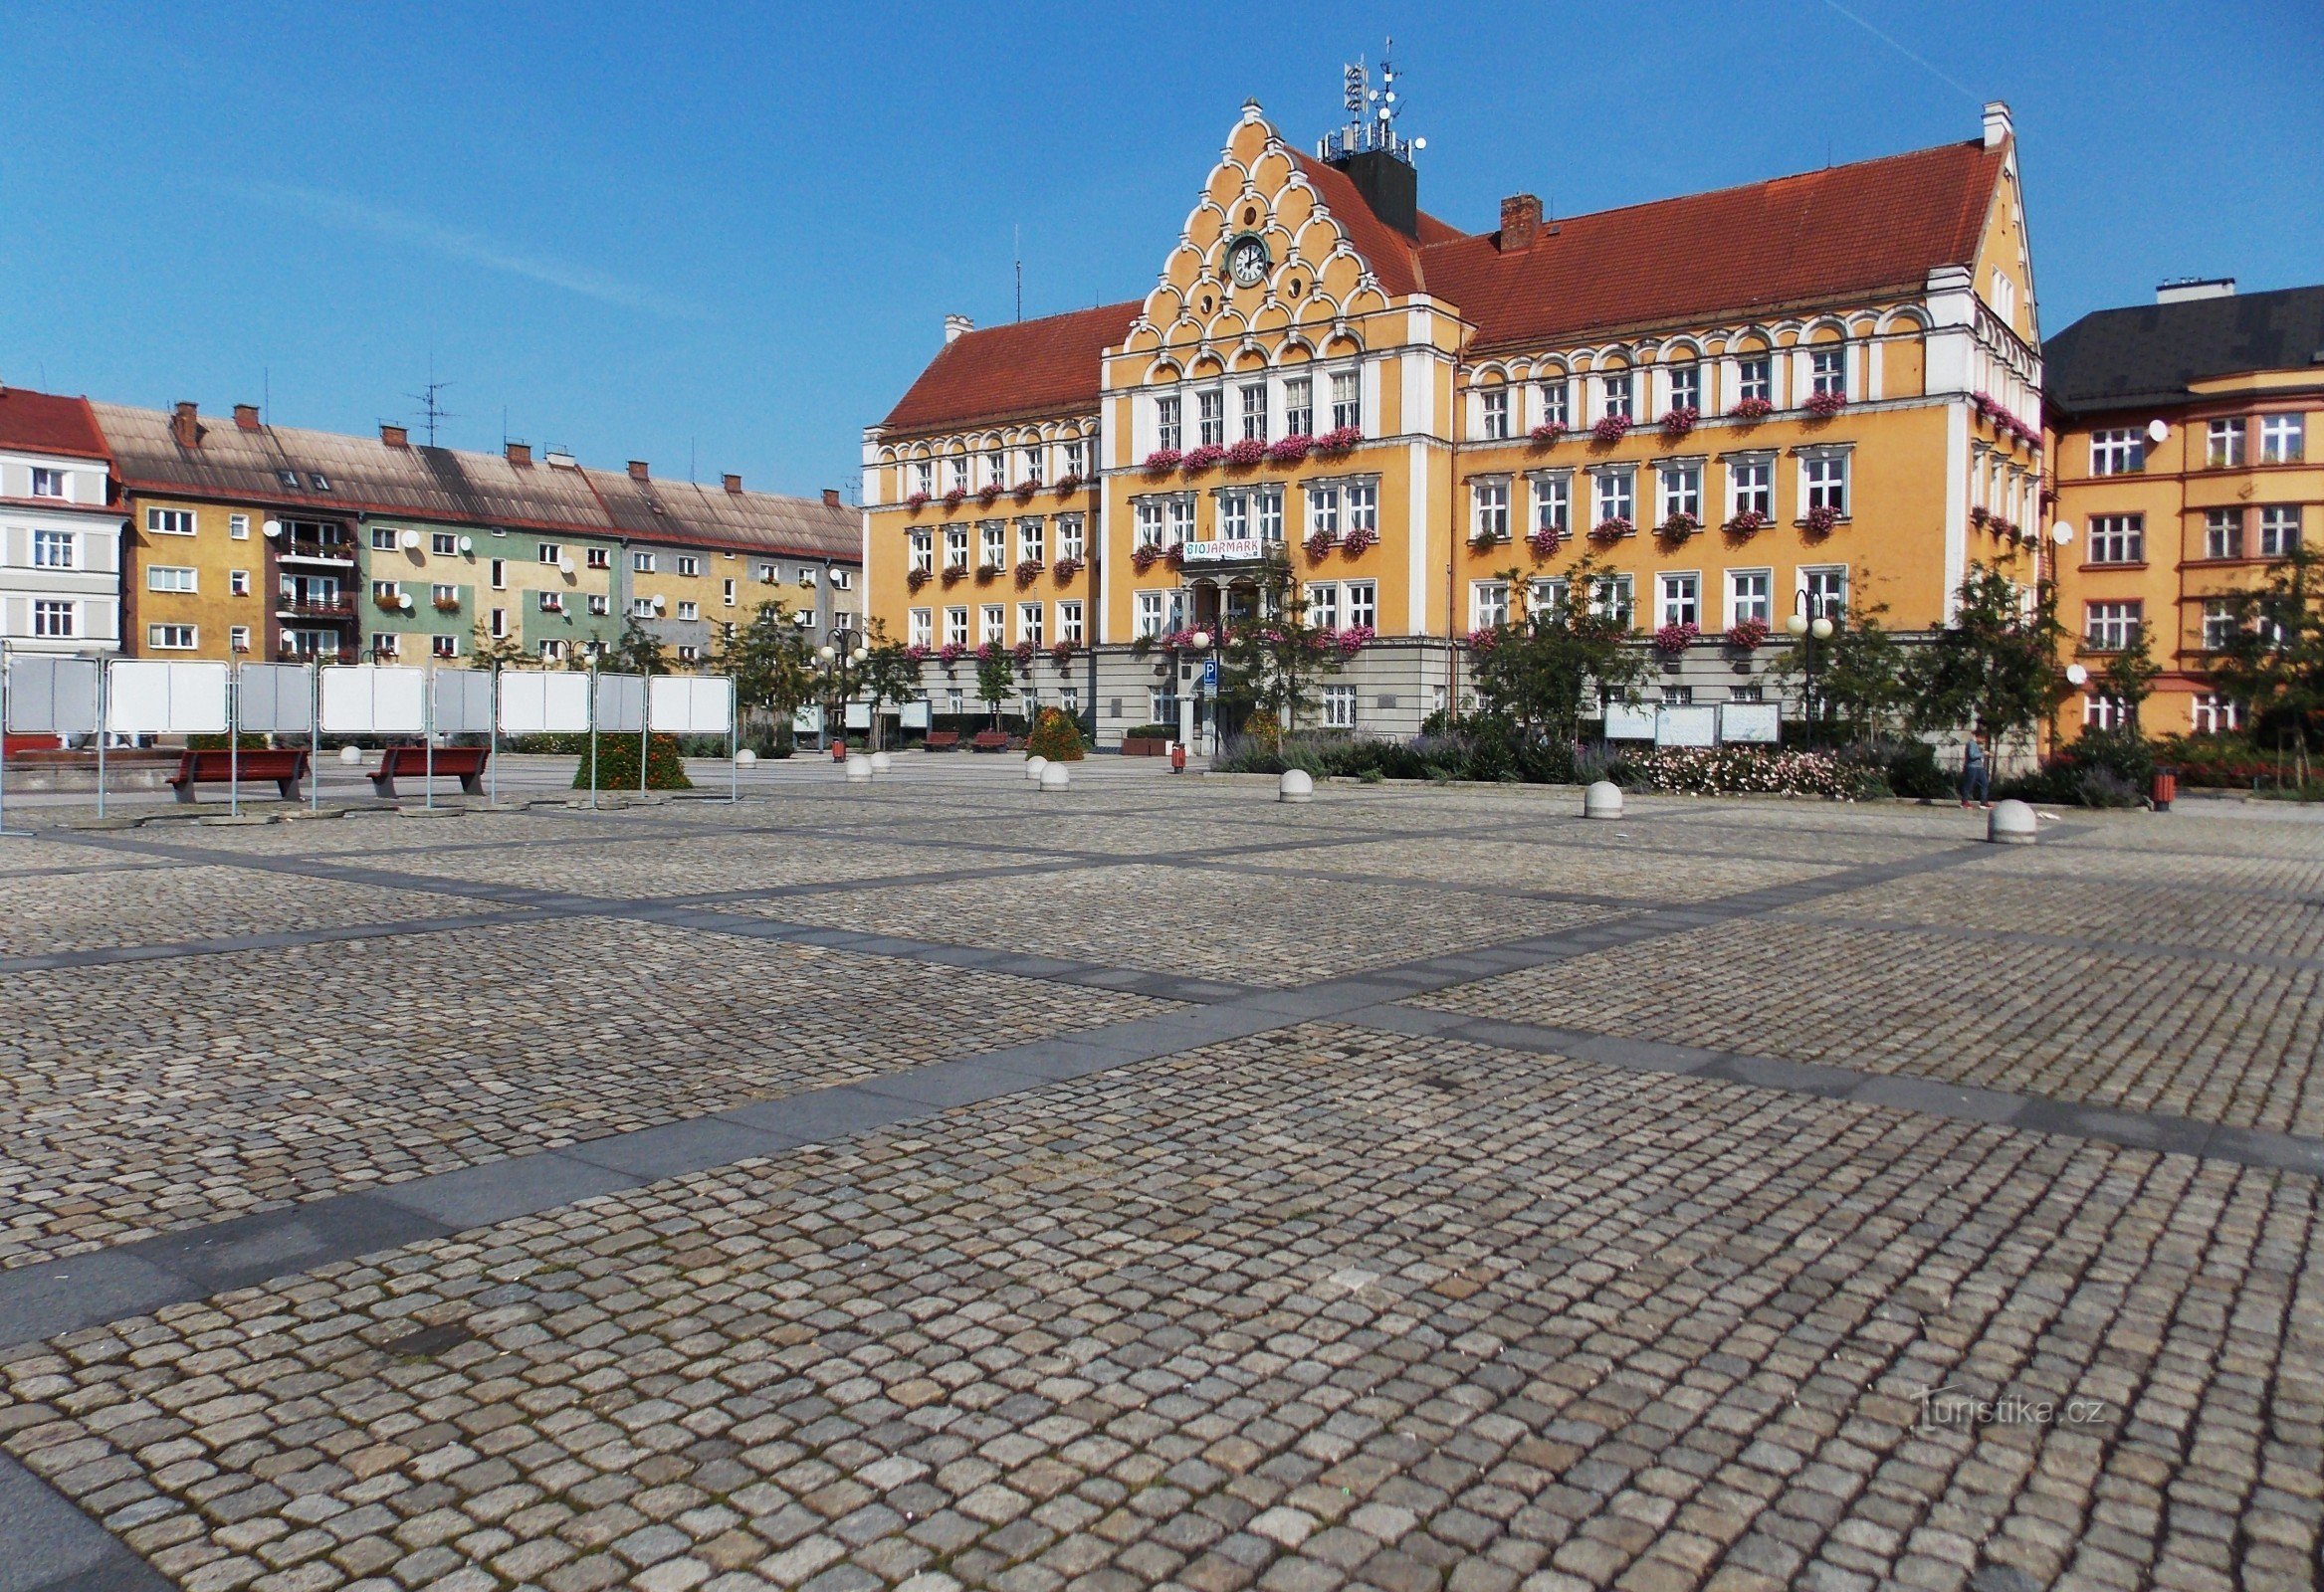 Đặc điểm nổi bật của quảng trường Těšín là tòa thị chính